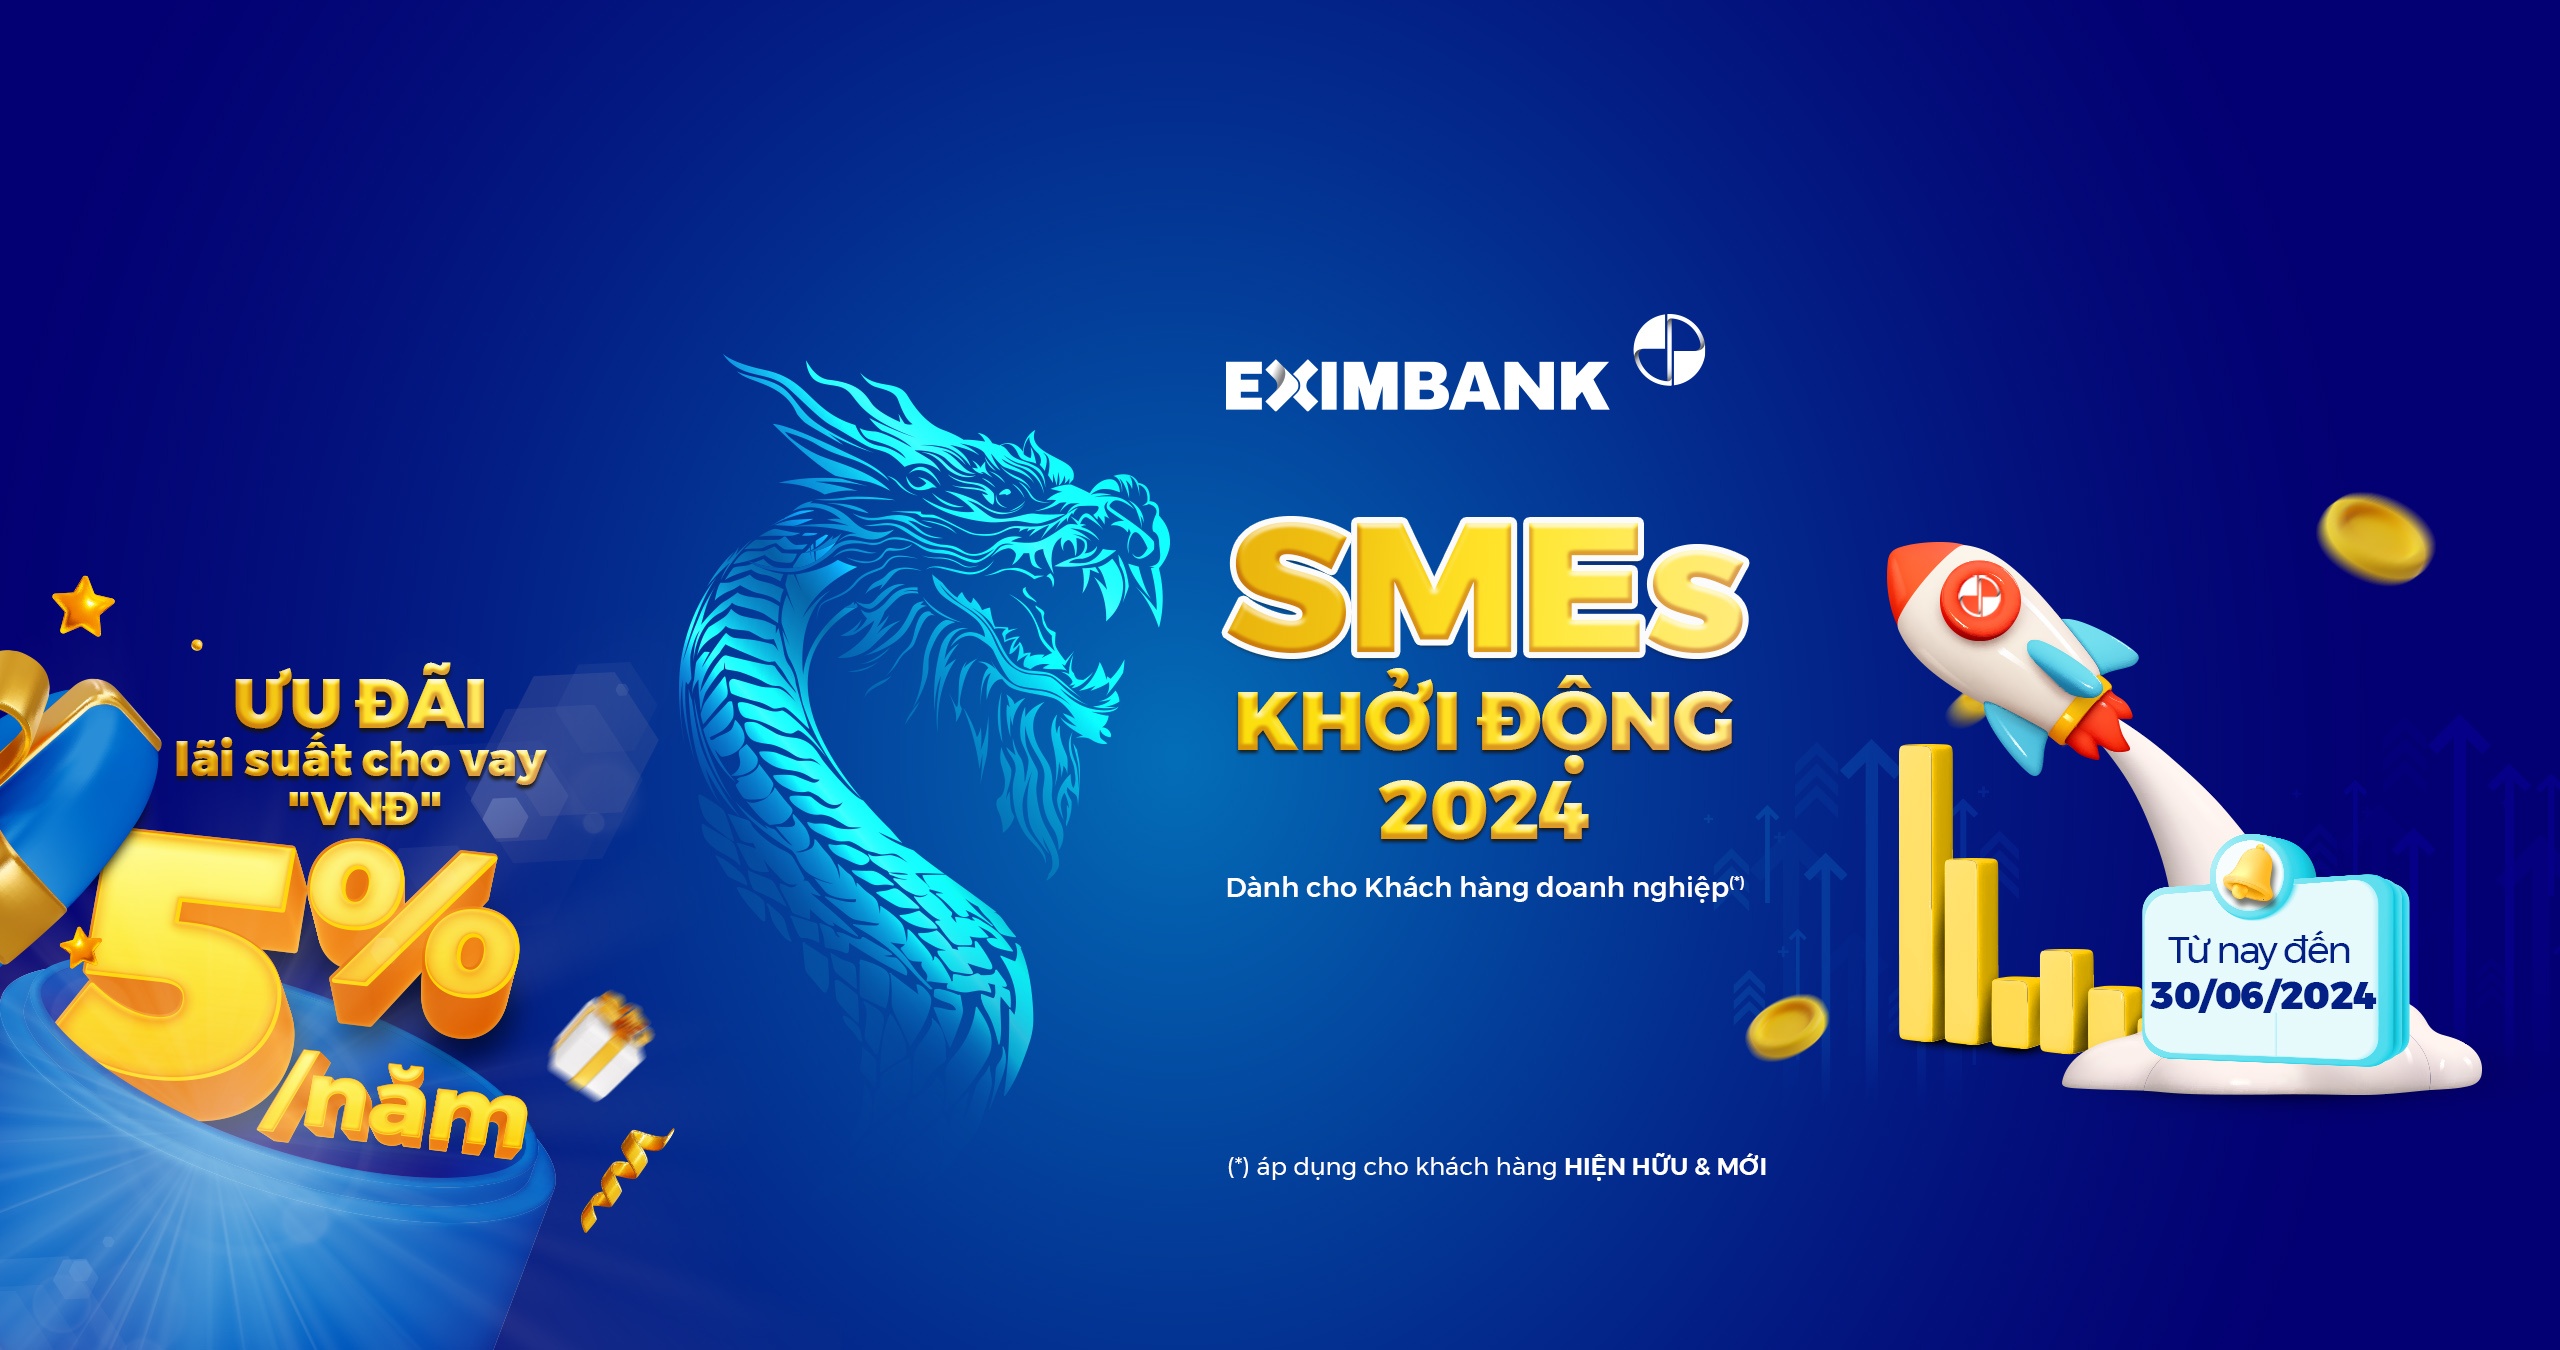 eximbank cho vay uu dai smes khoi dong 2024